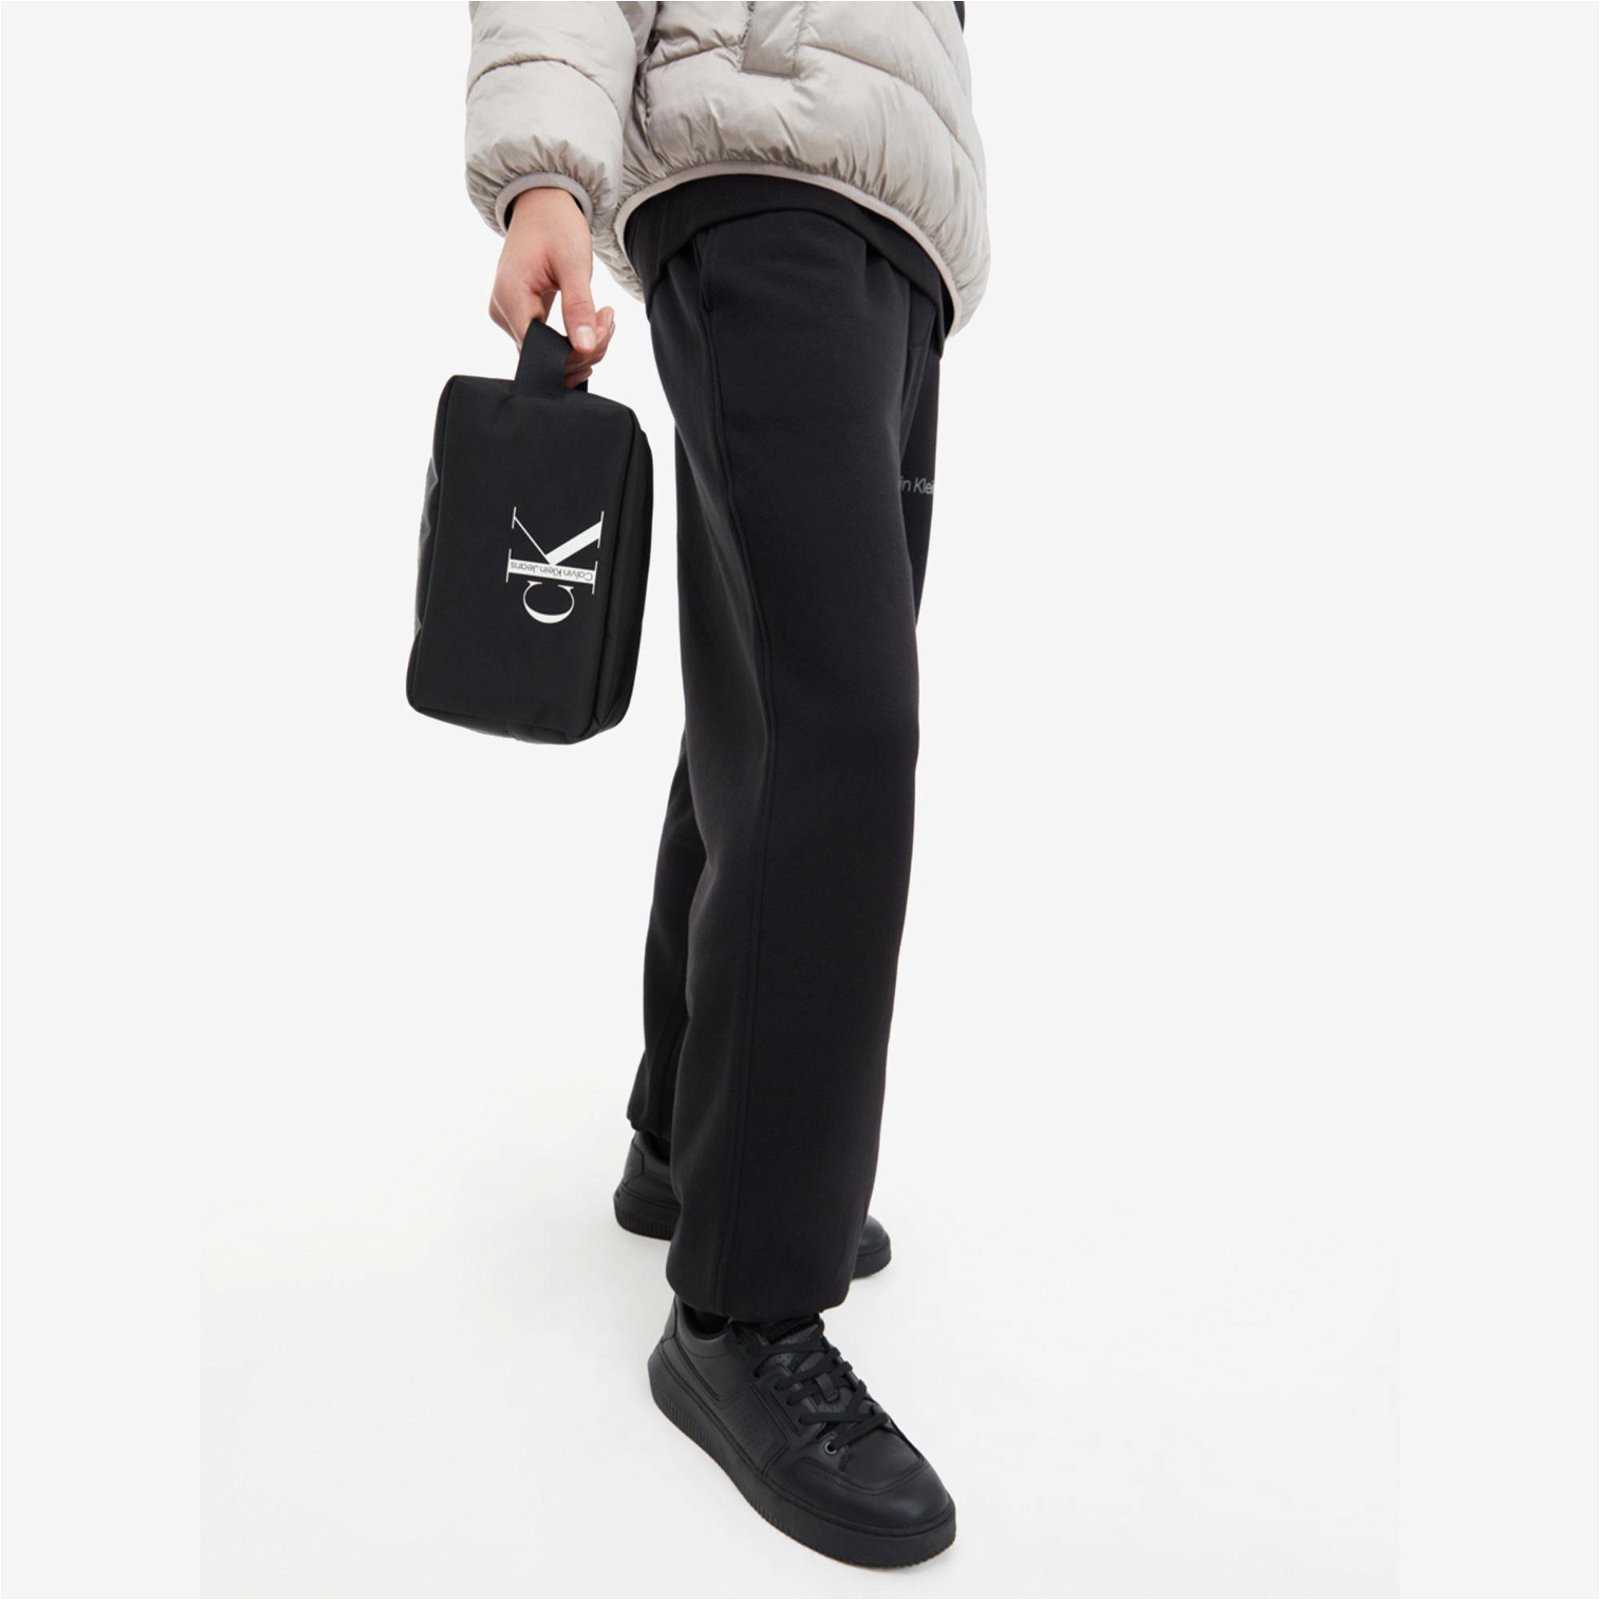 Calvin Klein Sport Essentials Washbag Unisex Siyah Makyaj Çantası